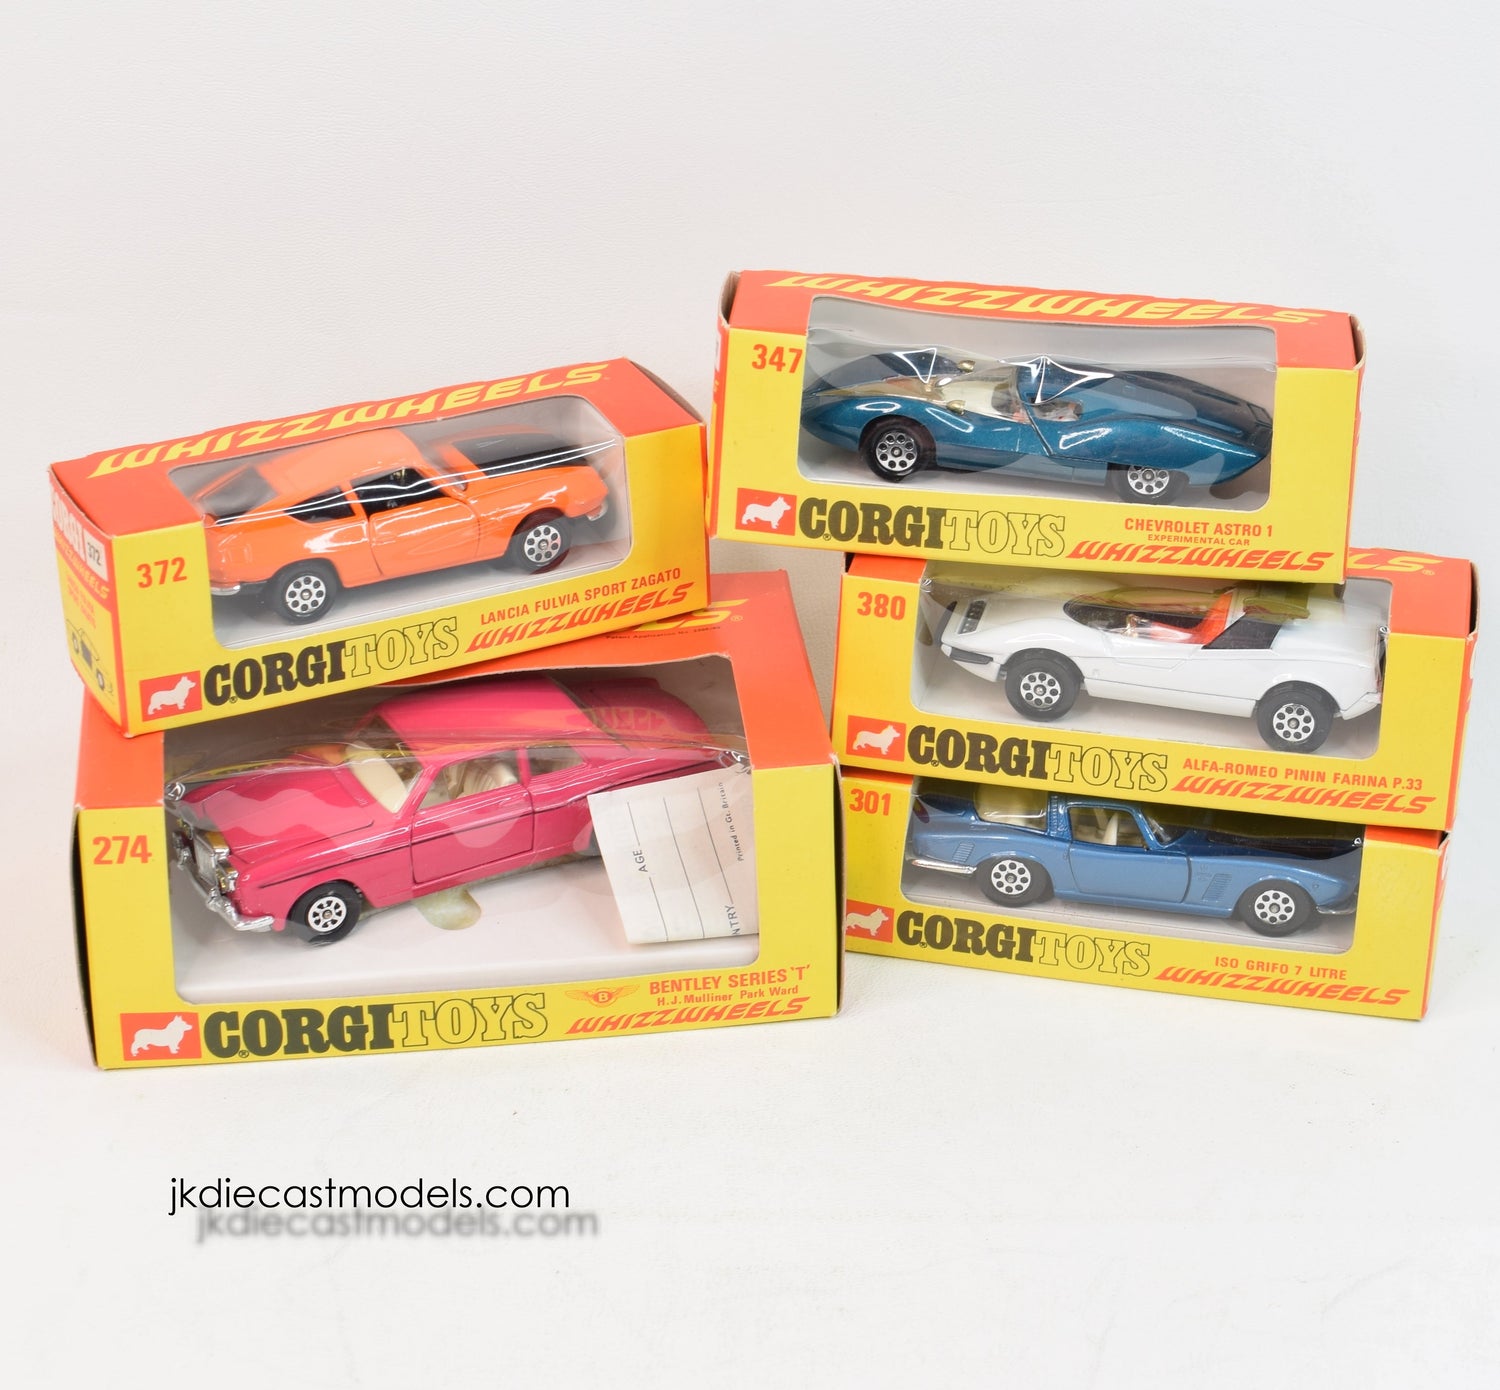 5 x Corgi toys Whizzwheels Virtually Mint/Boxed